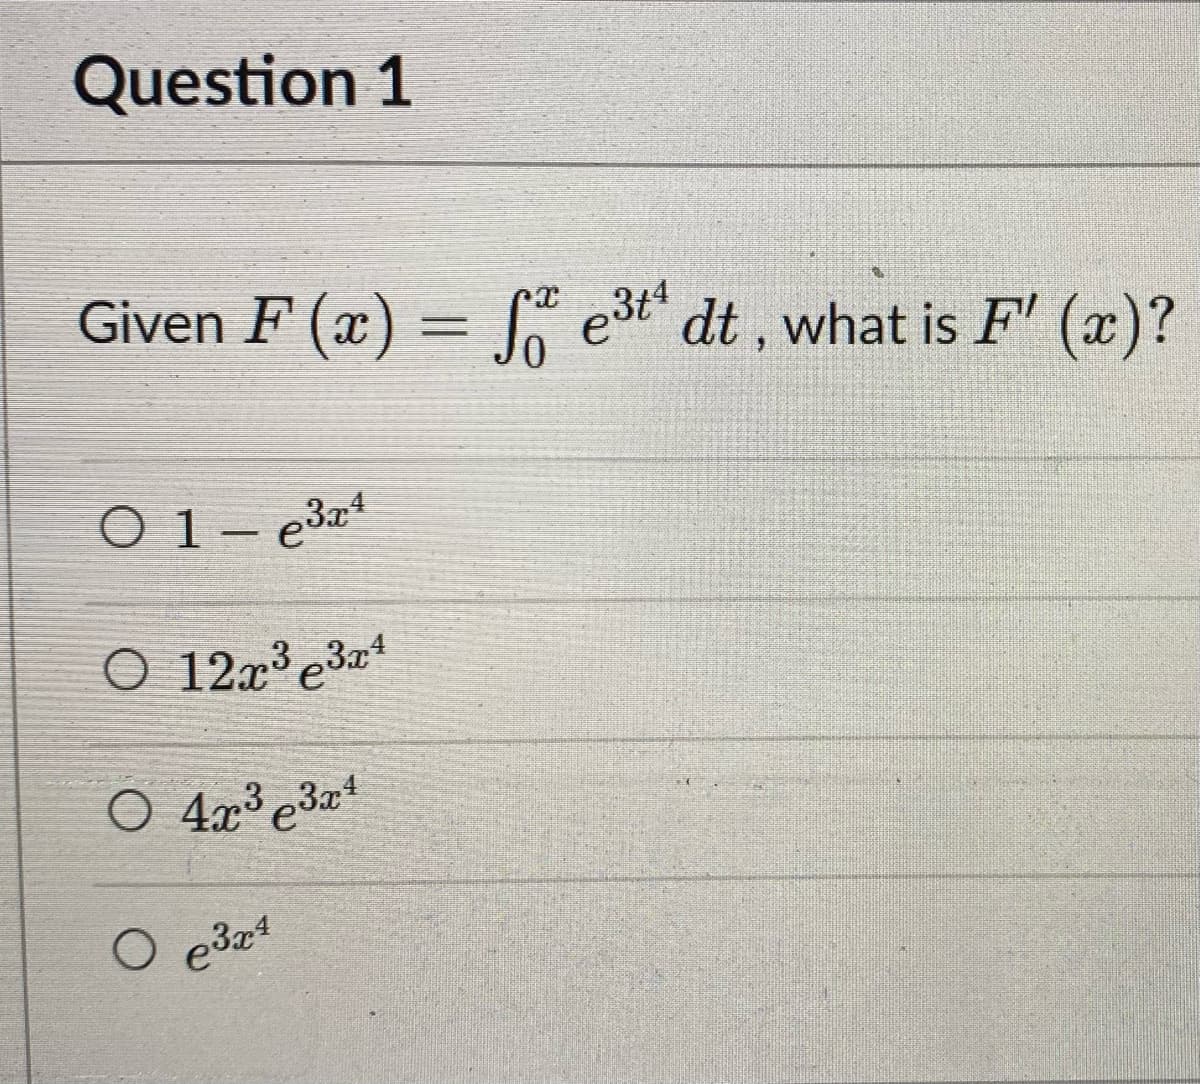 Question 1
Given F(x) = f e³t¹ dt, what is F'(x)?
01-e3x4
O 12x³ 3x4
O 4x³3x¹
O
e³x¹